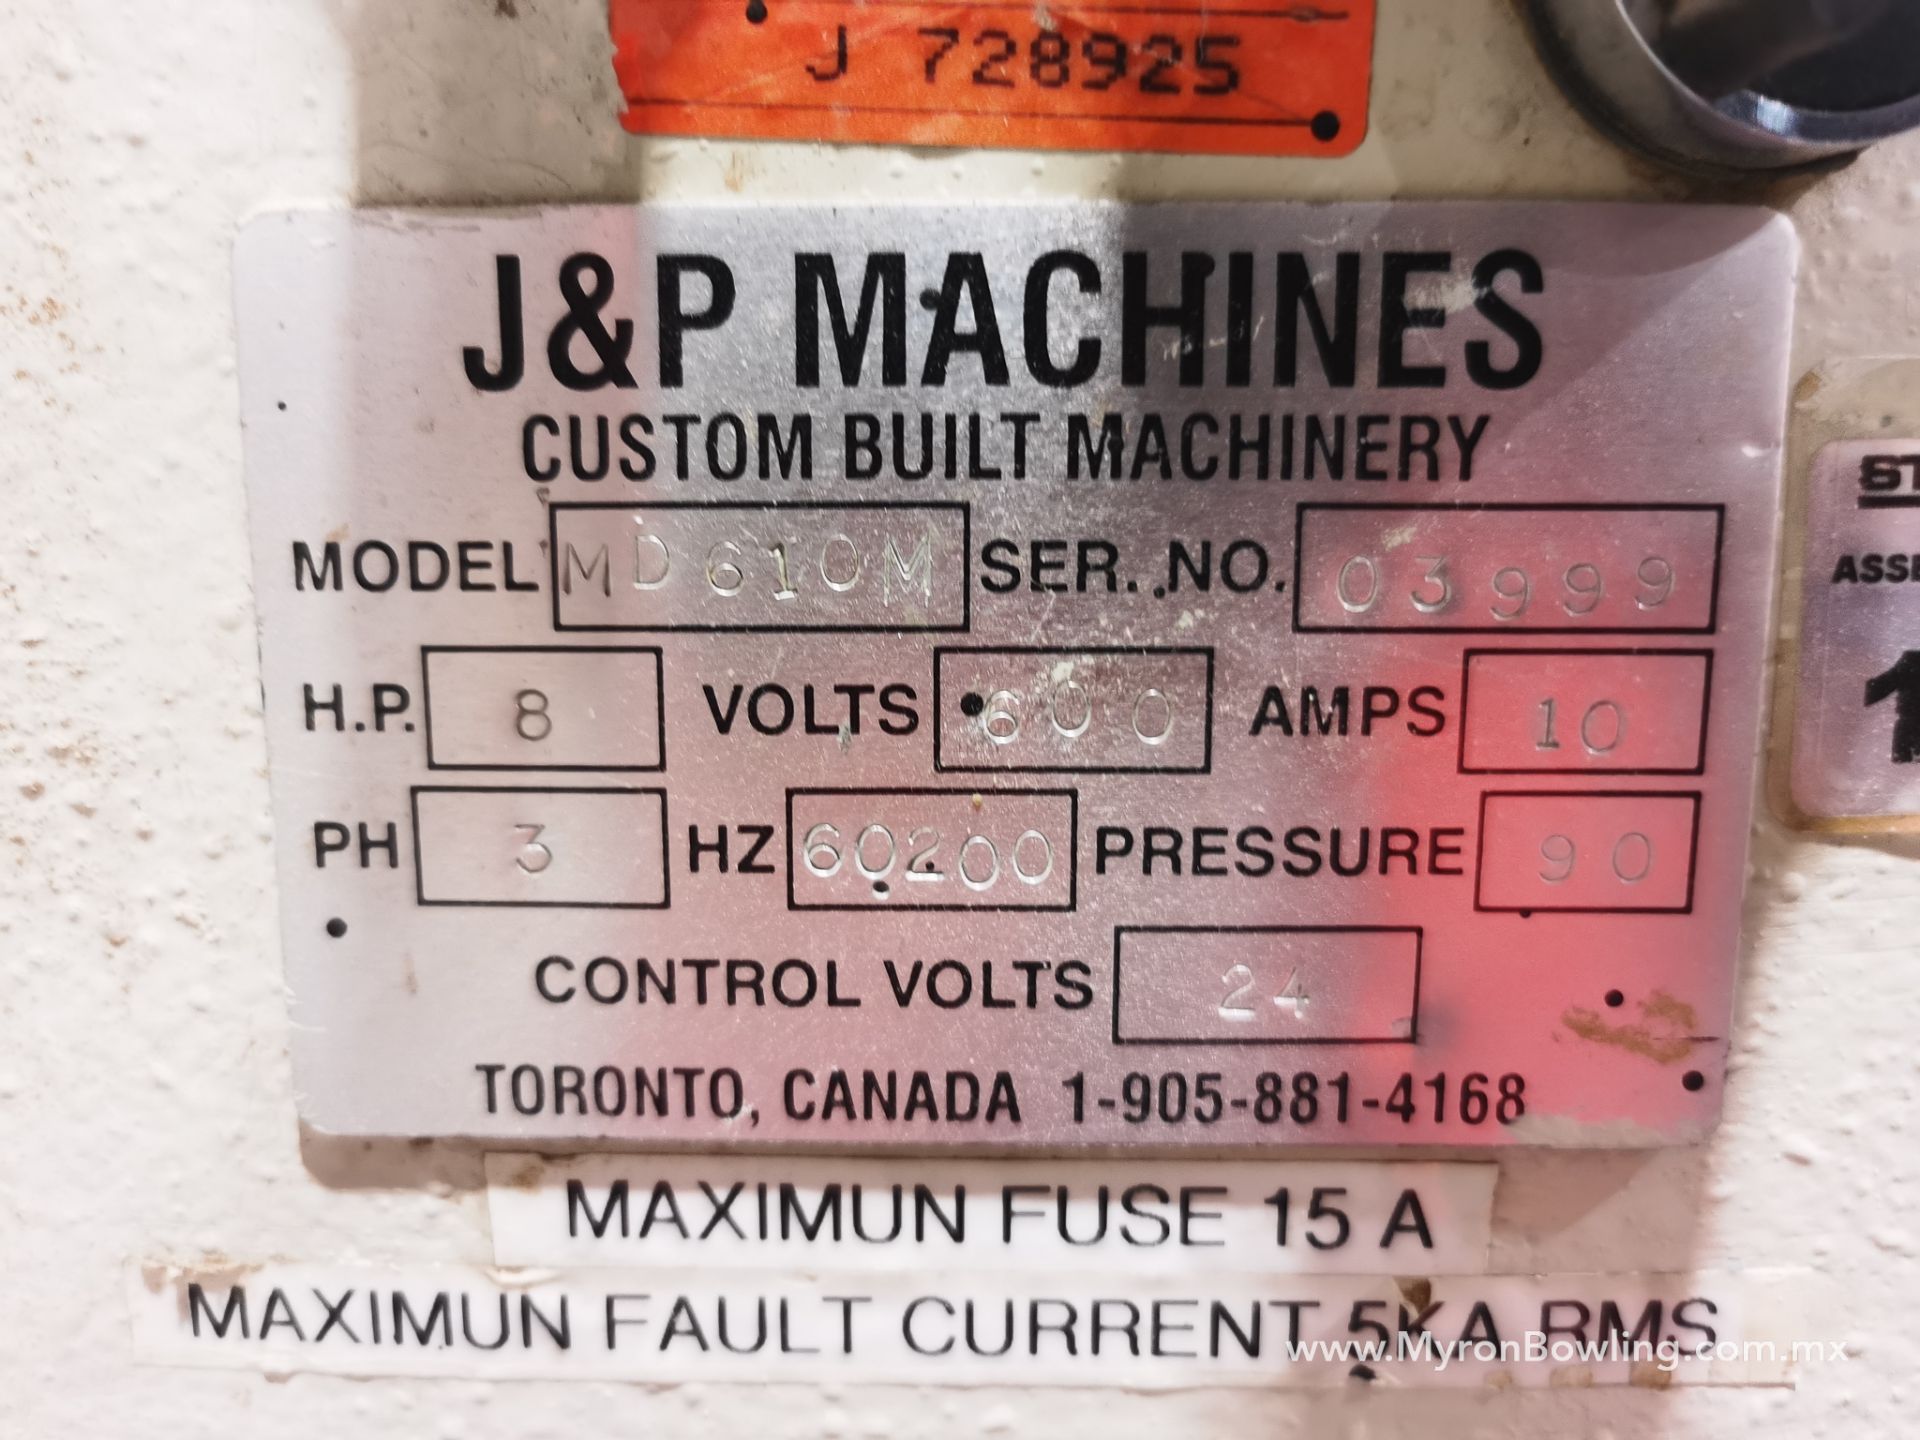 J&P Drawer Front Boring Machine, Model MD610M, S/N 3999, 600 V / 60 Hz, ASSET NUMBER 11204 - Image 10 of 22